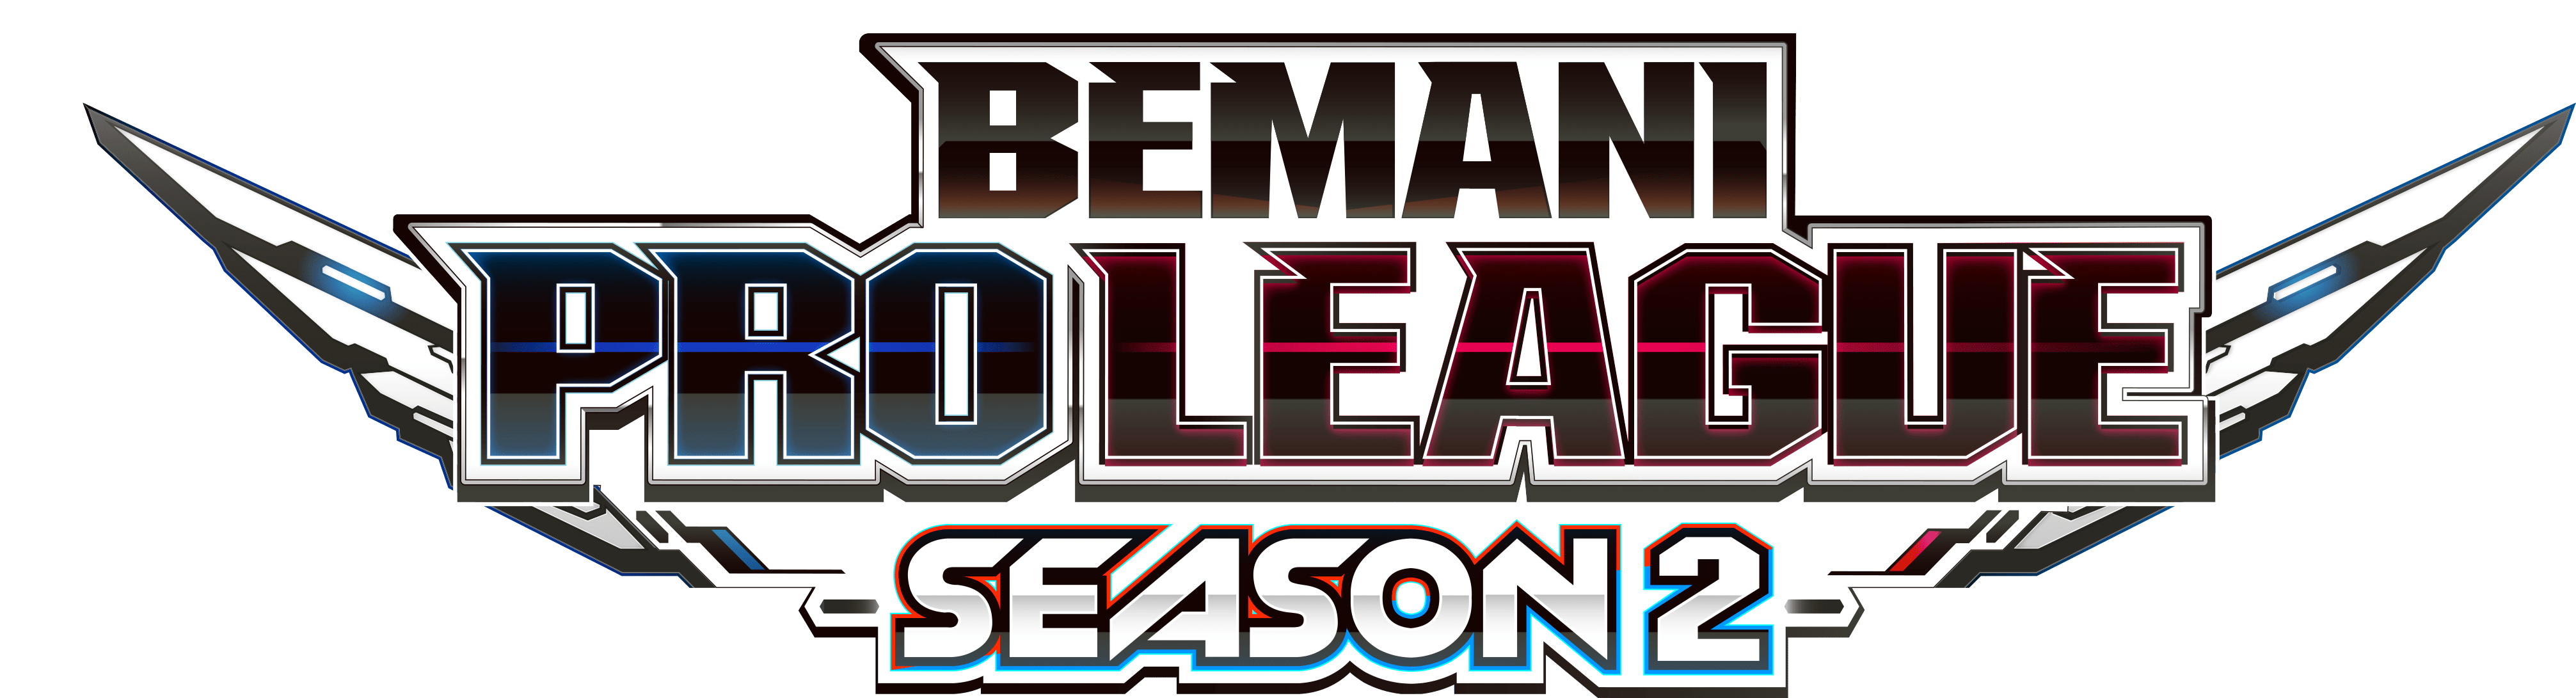 【大会情報】BEMANI PRO LEAGUE SEASON2 レギュラーステージ 第27、28試合【2022年9月28日】